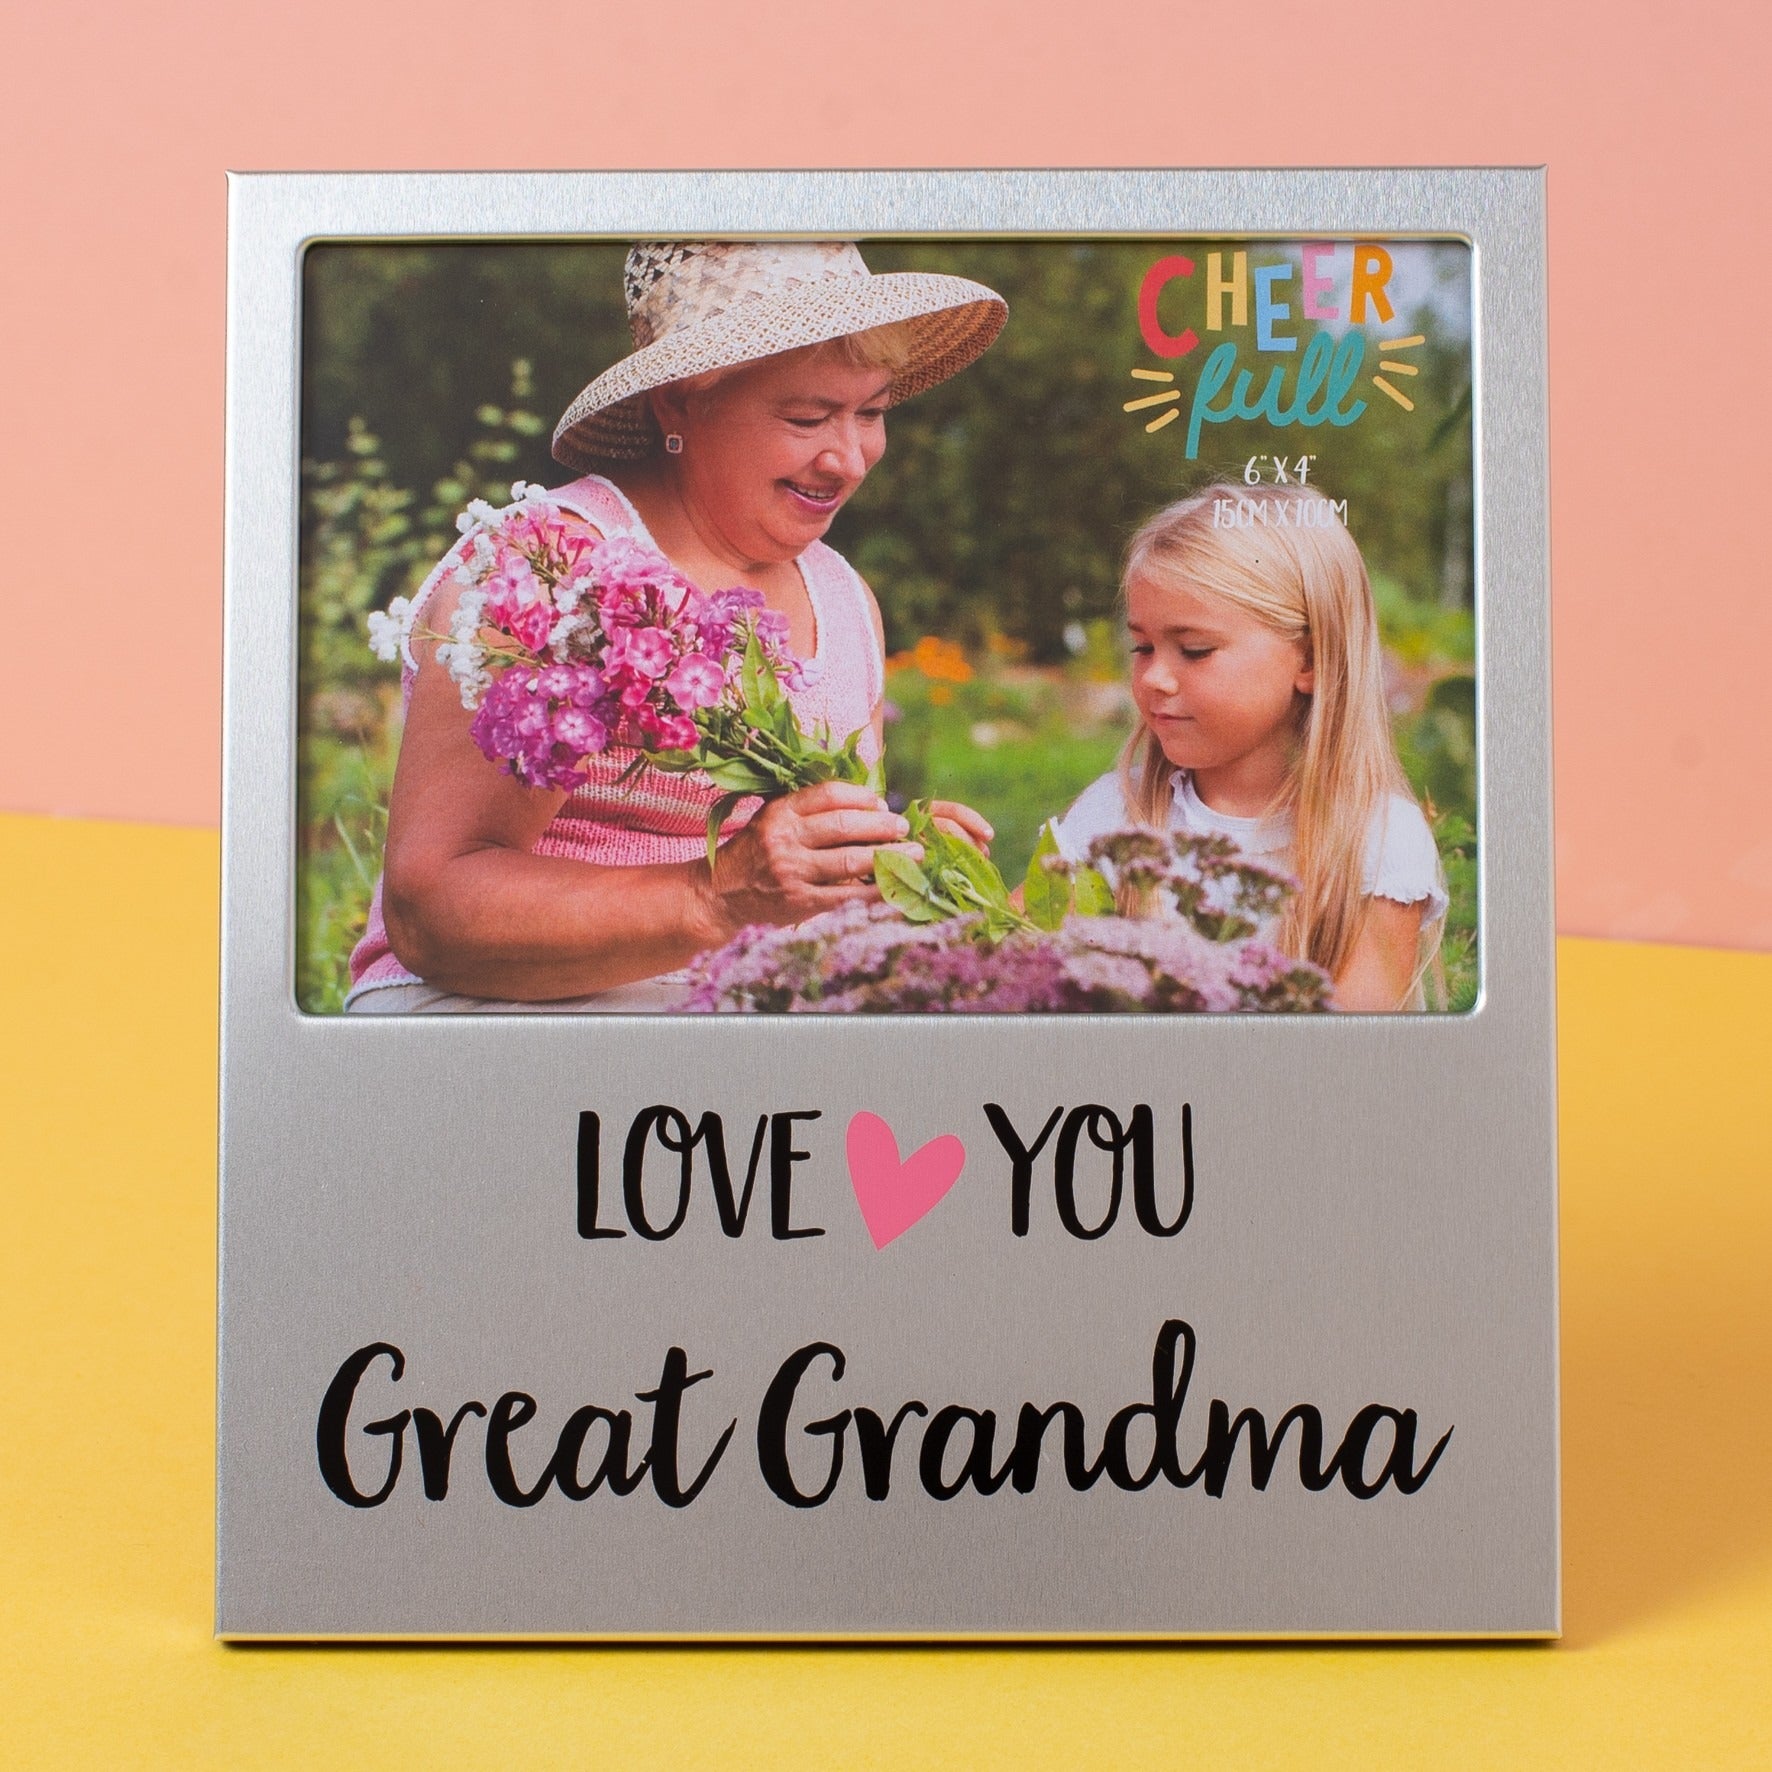 View Cheerfull Great Grandma Aluminium Photo Frame 6 x 4  information